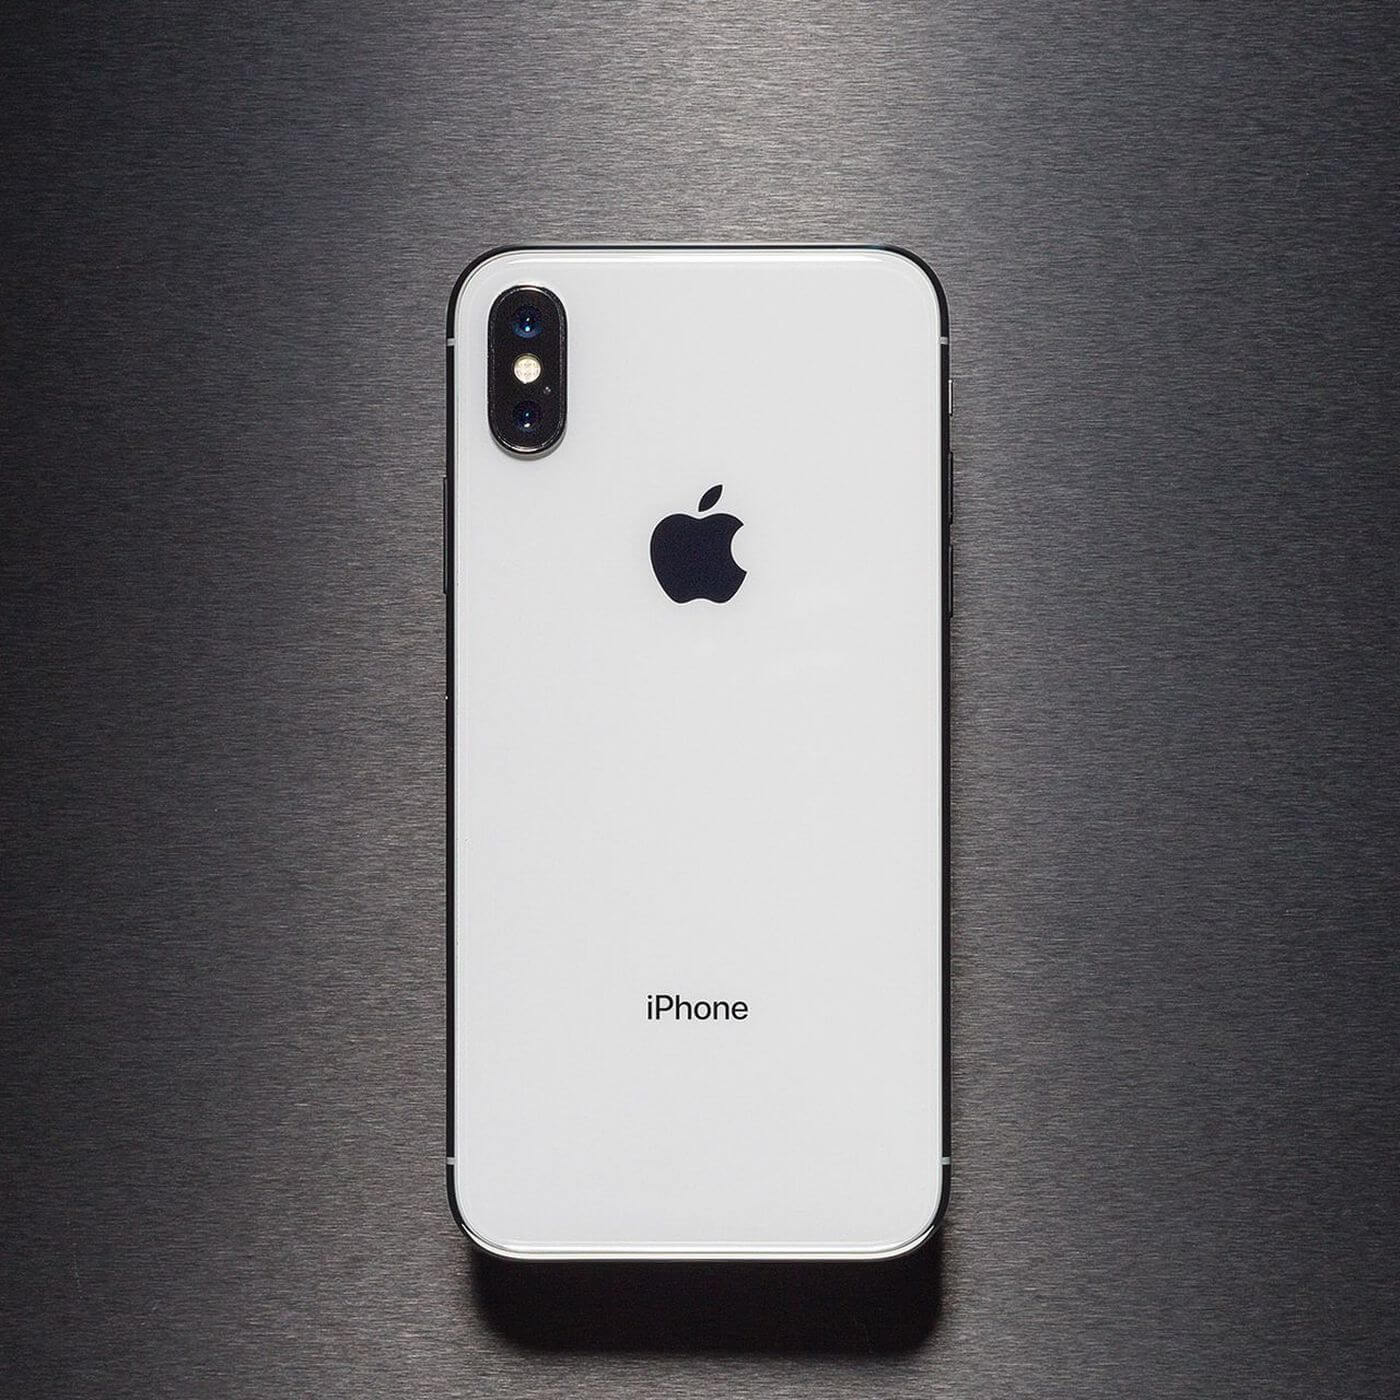 Apple Açıkladı: iPhone Satışları Rekor Düzeydi Düştü